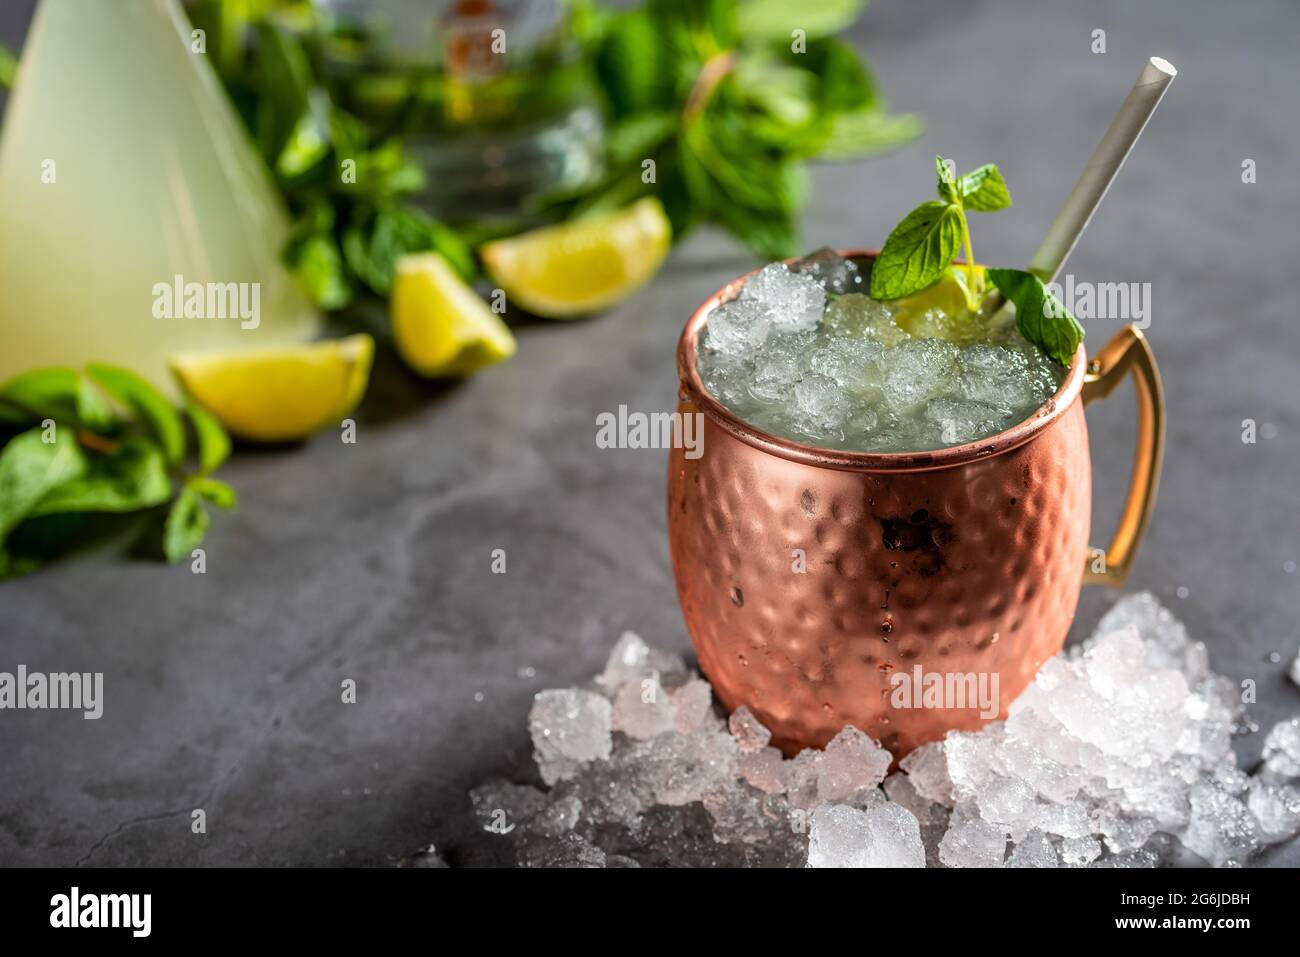 Moscow mule cocktail nella tazza di rame con lime e lo zenzero birra, vodka e menta guarnire Foto Stock